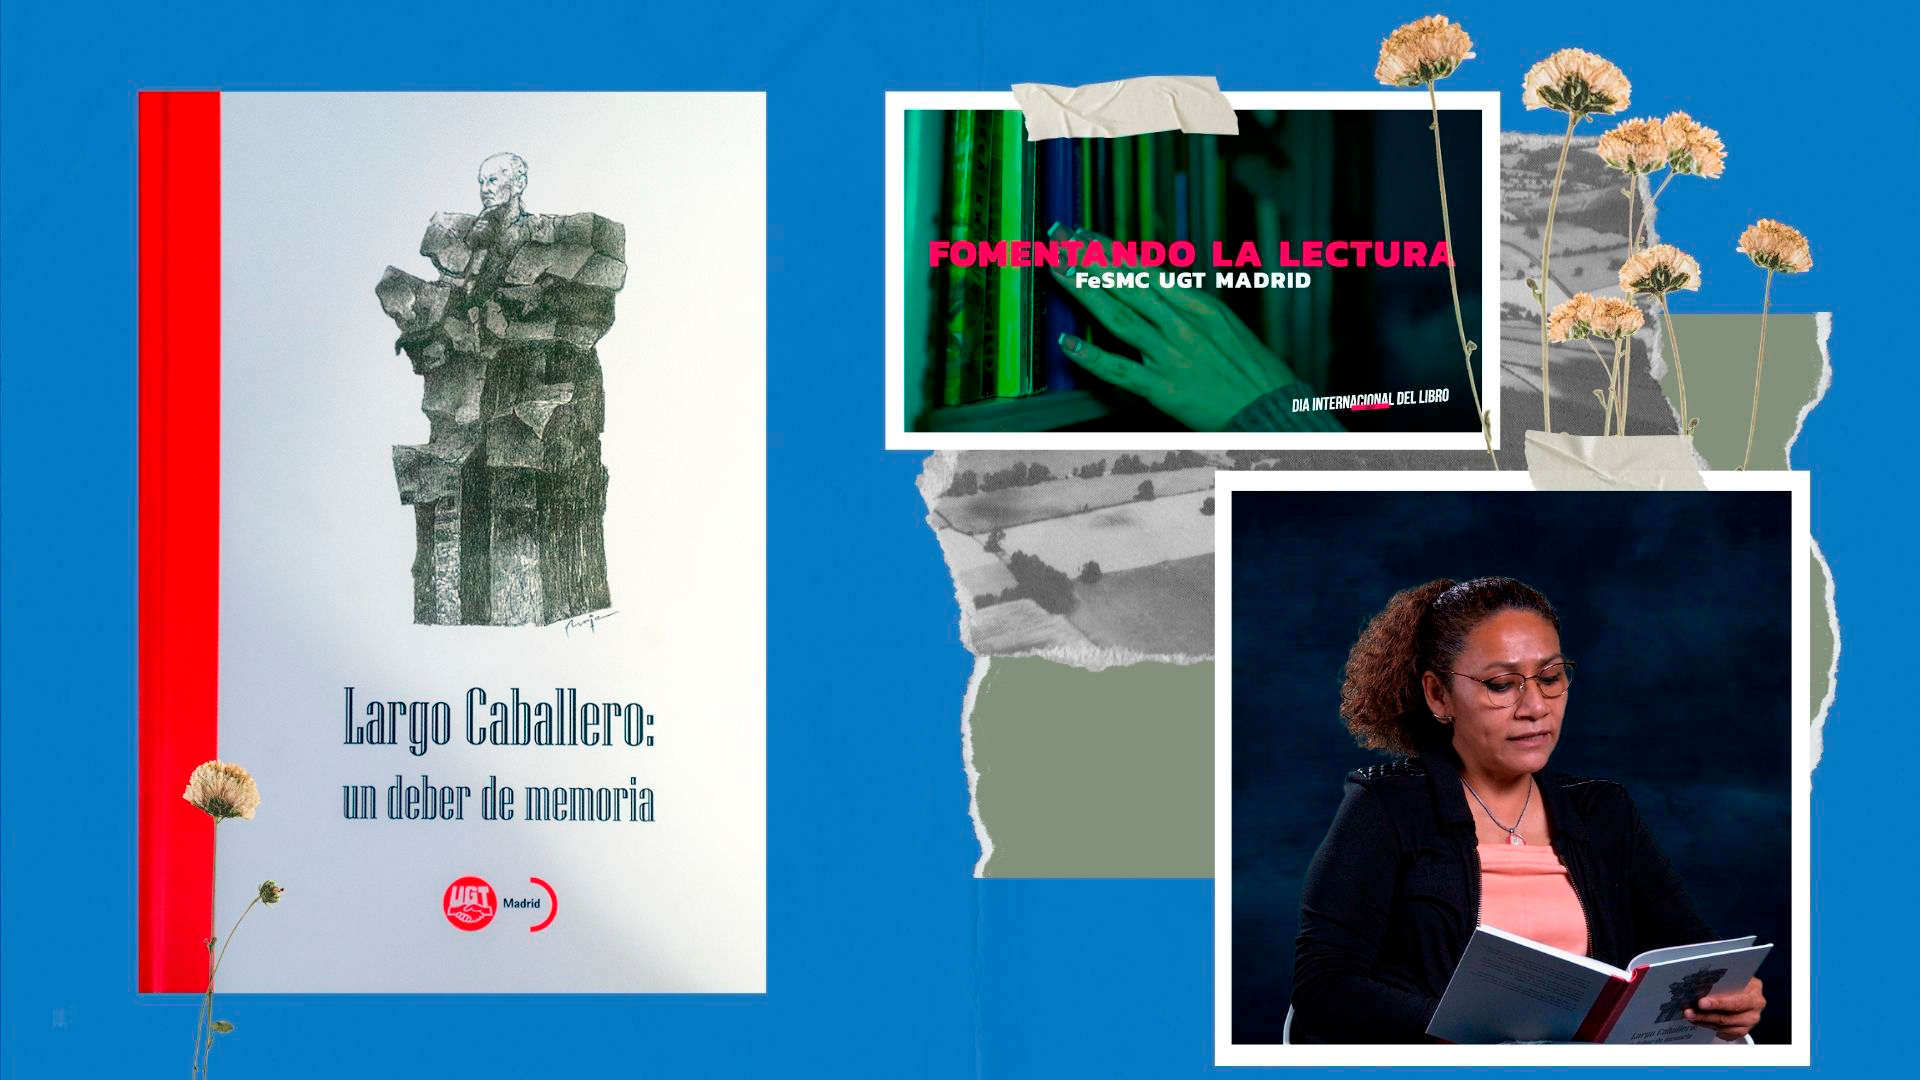 VIDEO | FeSMC UGT MADRID | FOMENTANDO LA LECTURA | DIA INTERNACIONAL DEL LIBRO 2021